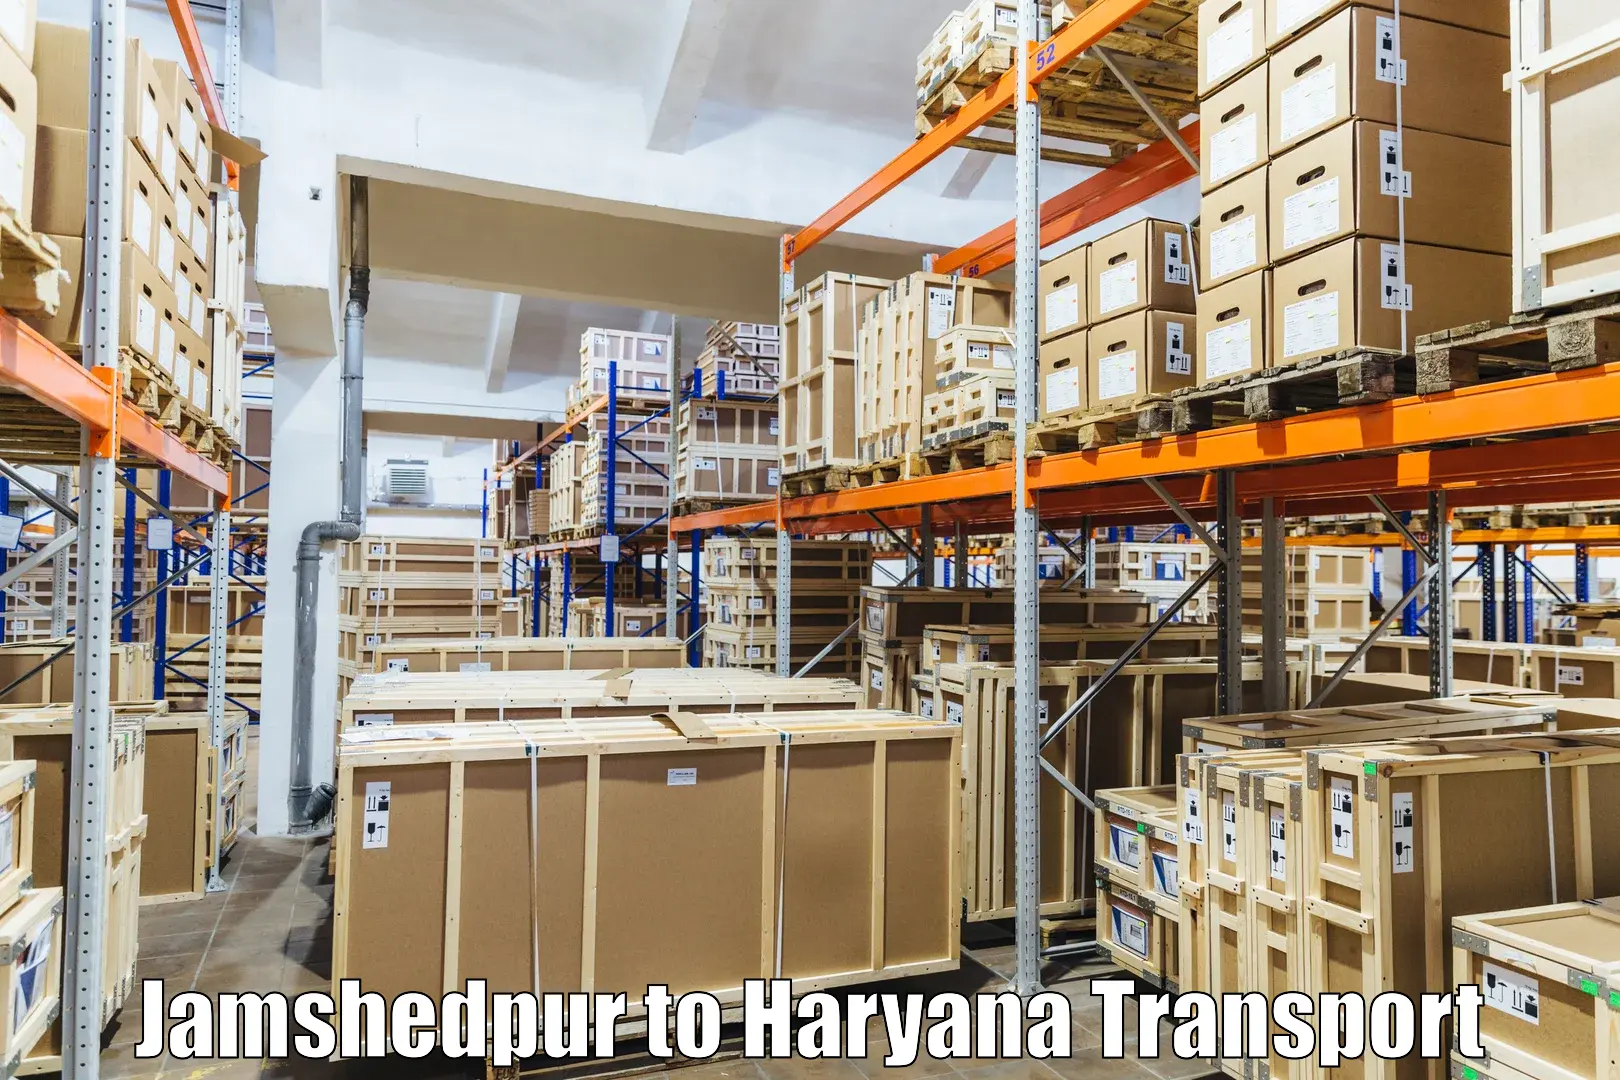 Transport shared services Jamshedpur to Hansi